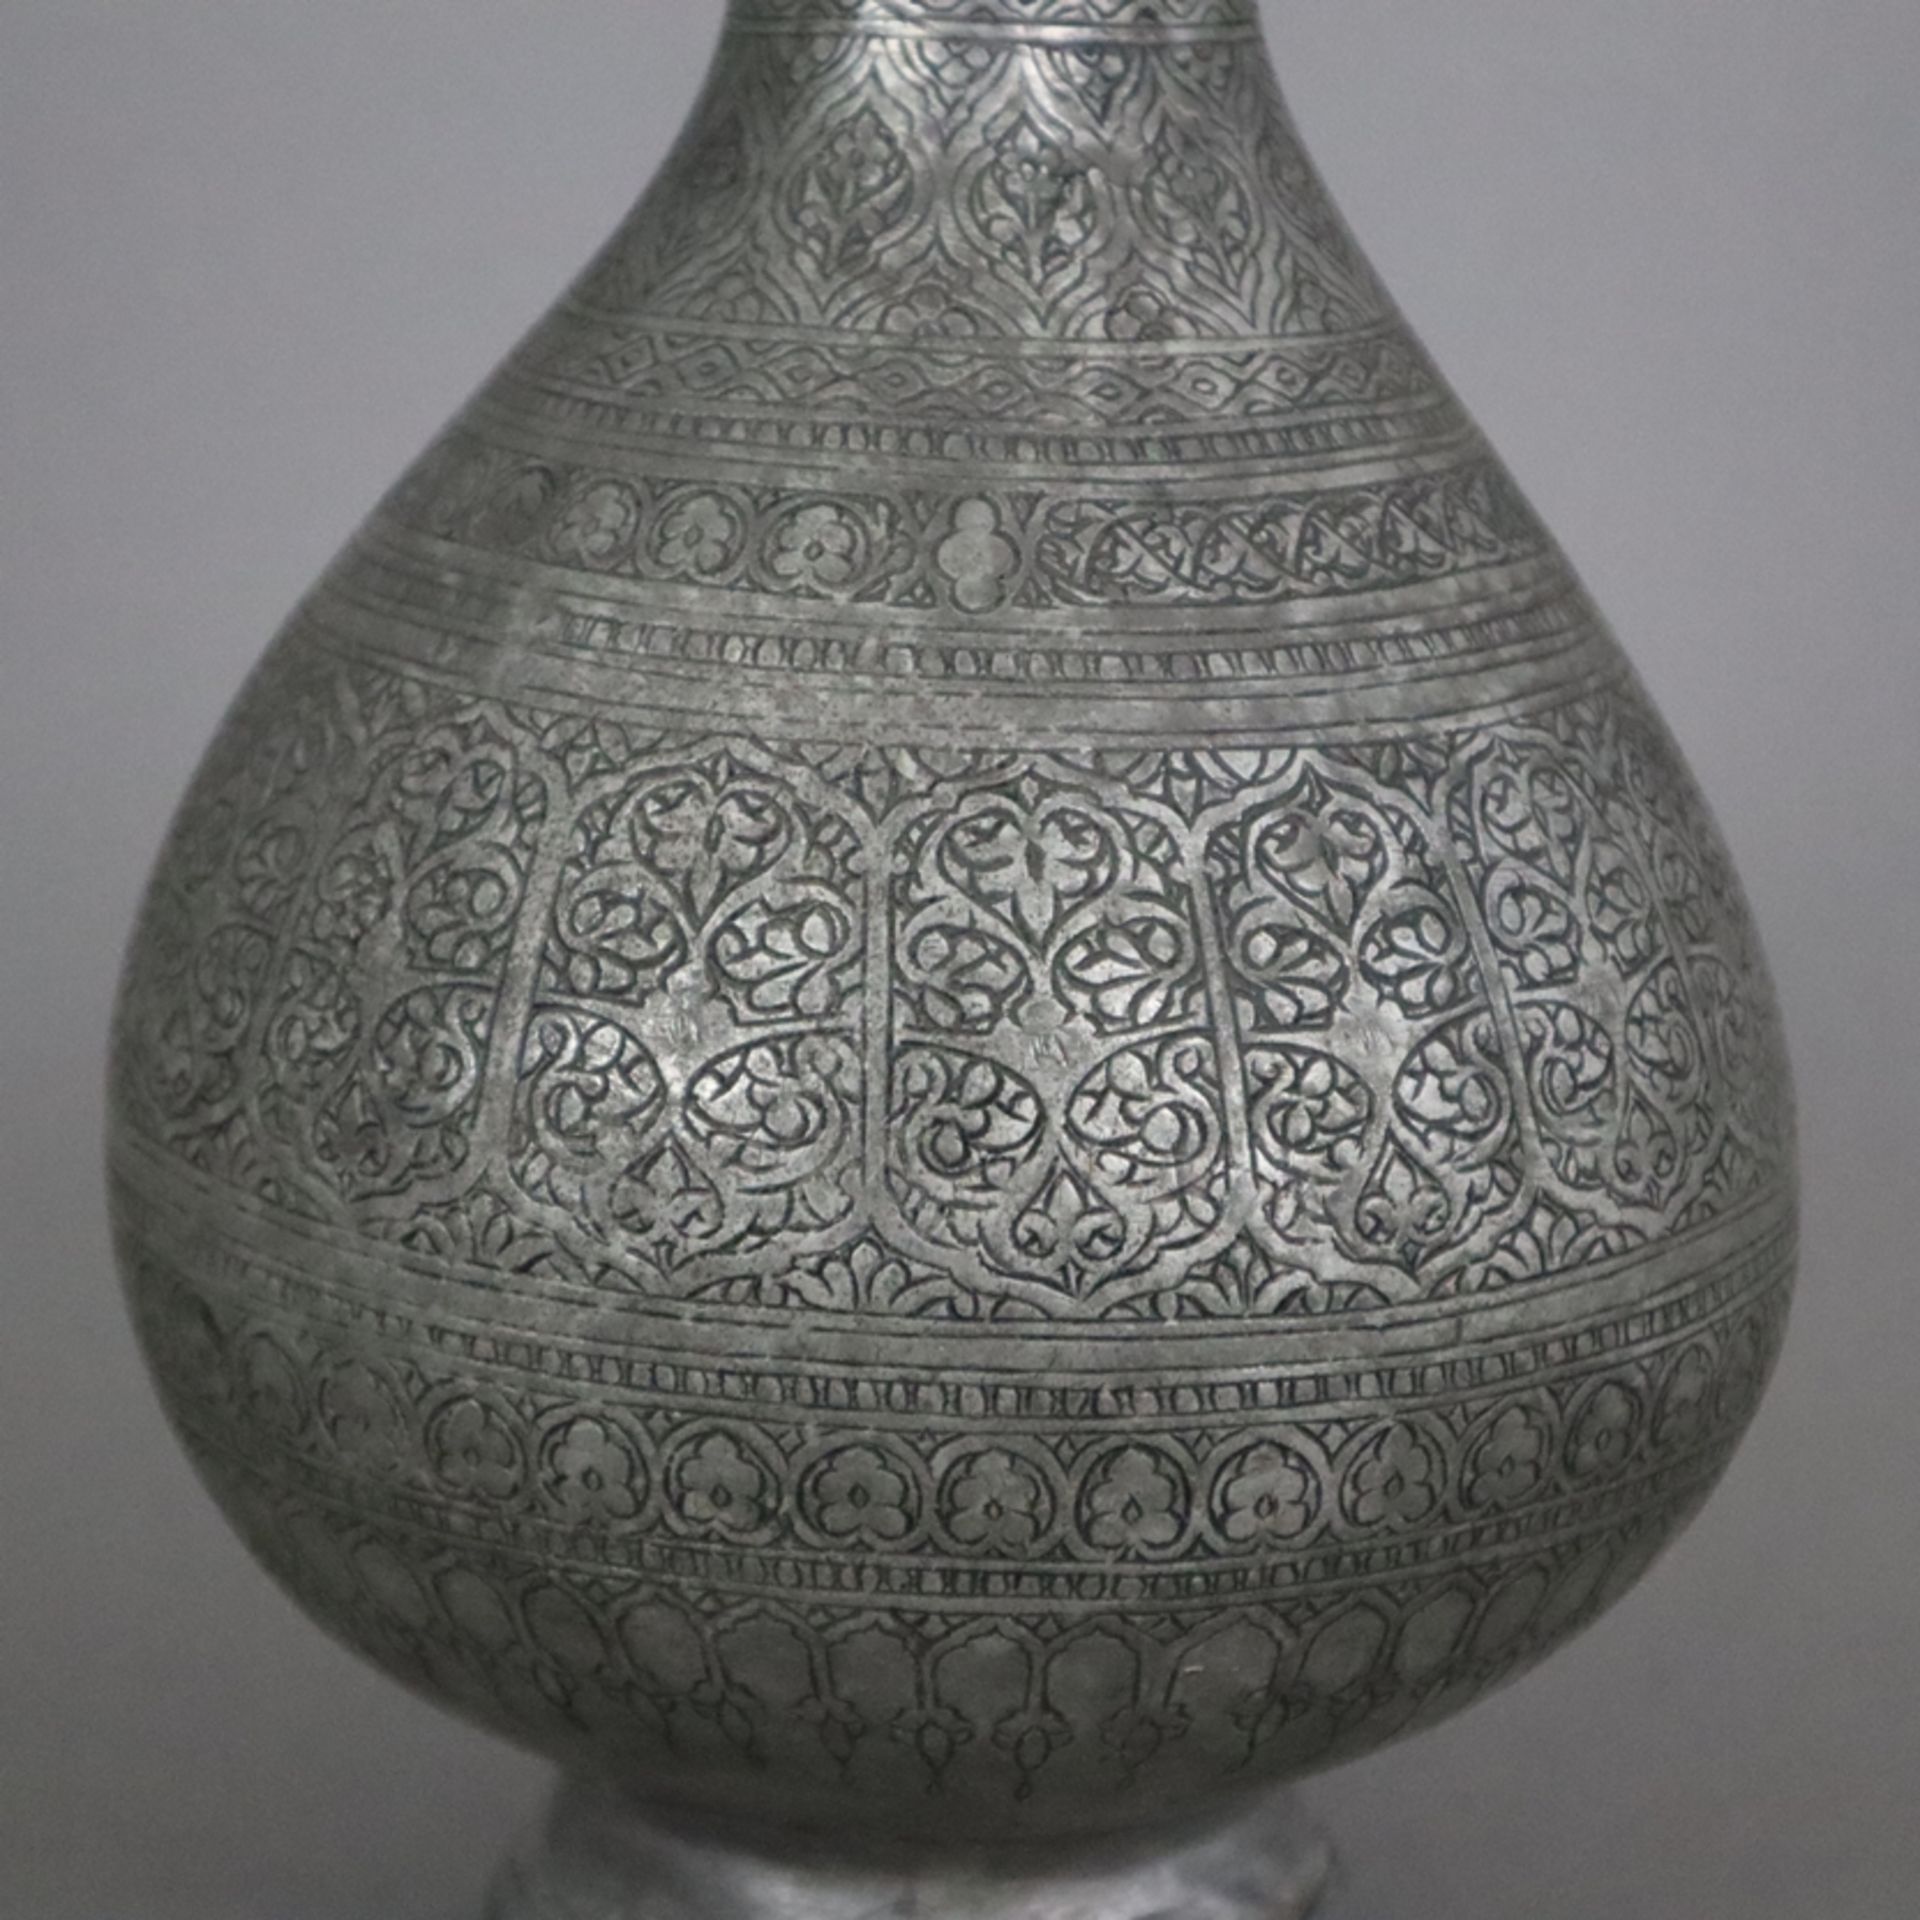 Vase - indopersisch, Kupfer versilbert / verzinnt?, birnförmige Vasenform am Hals durch Ringe gegli - Image 7 of 9